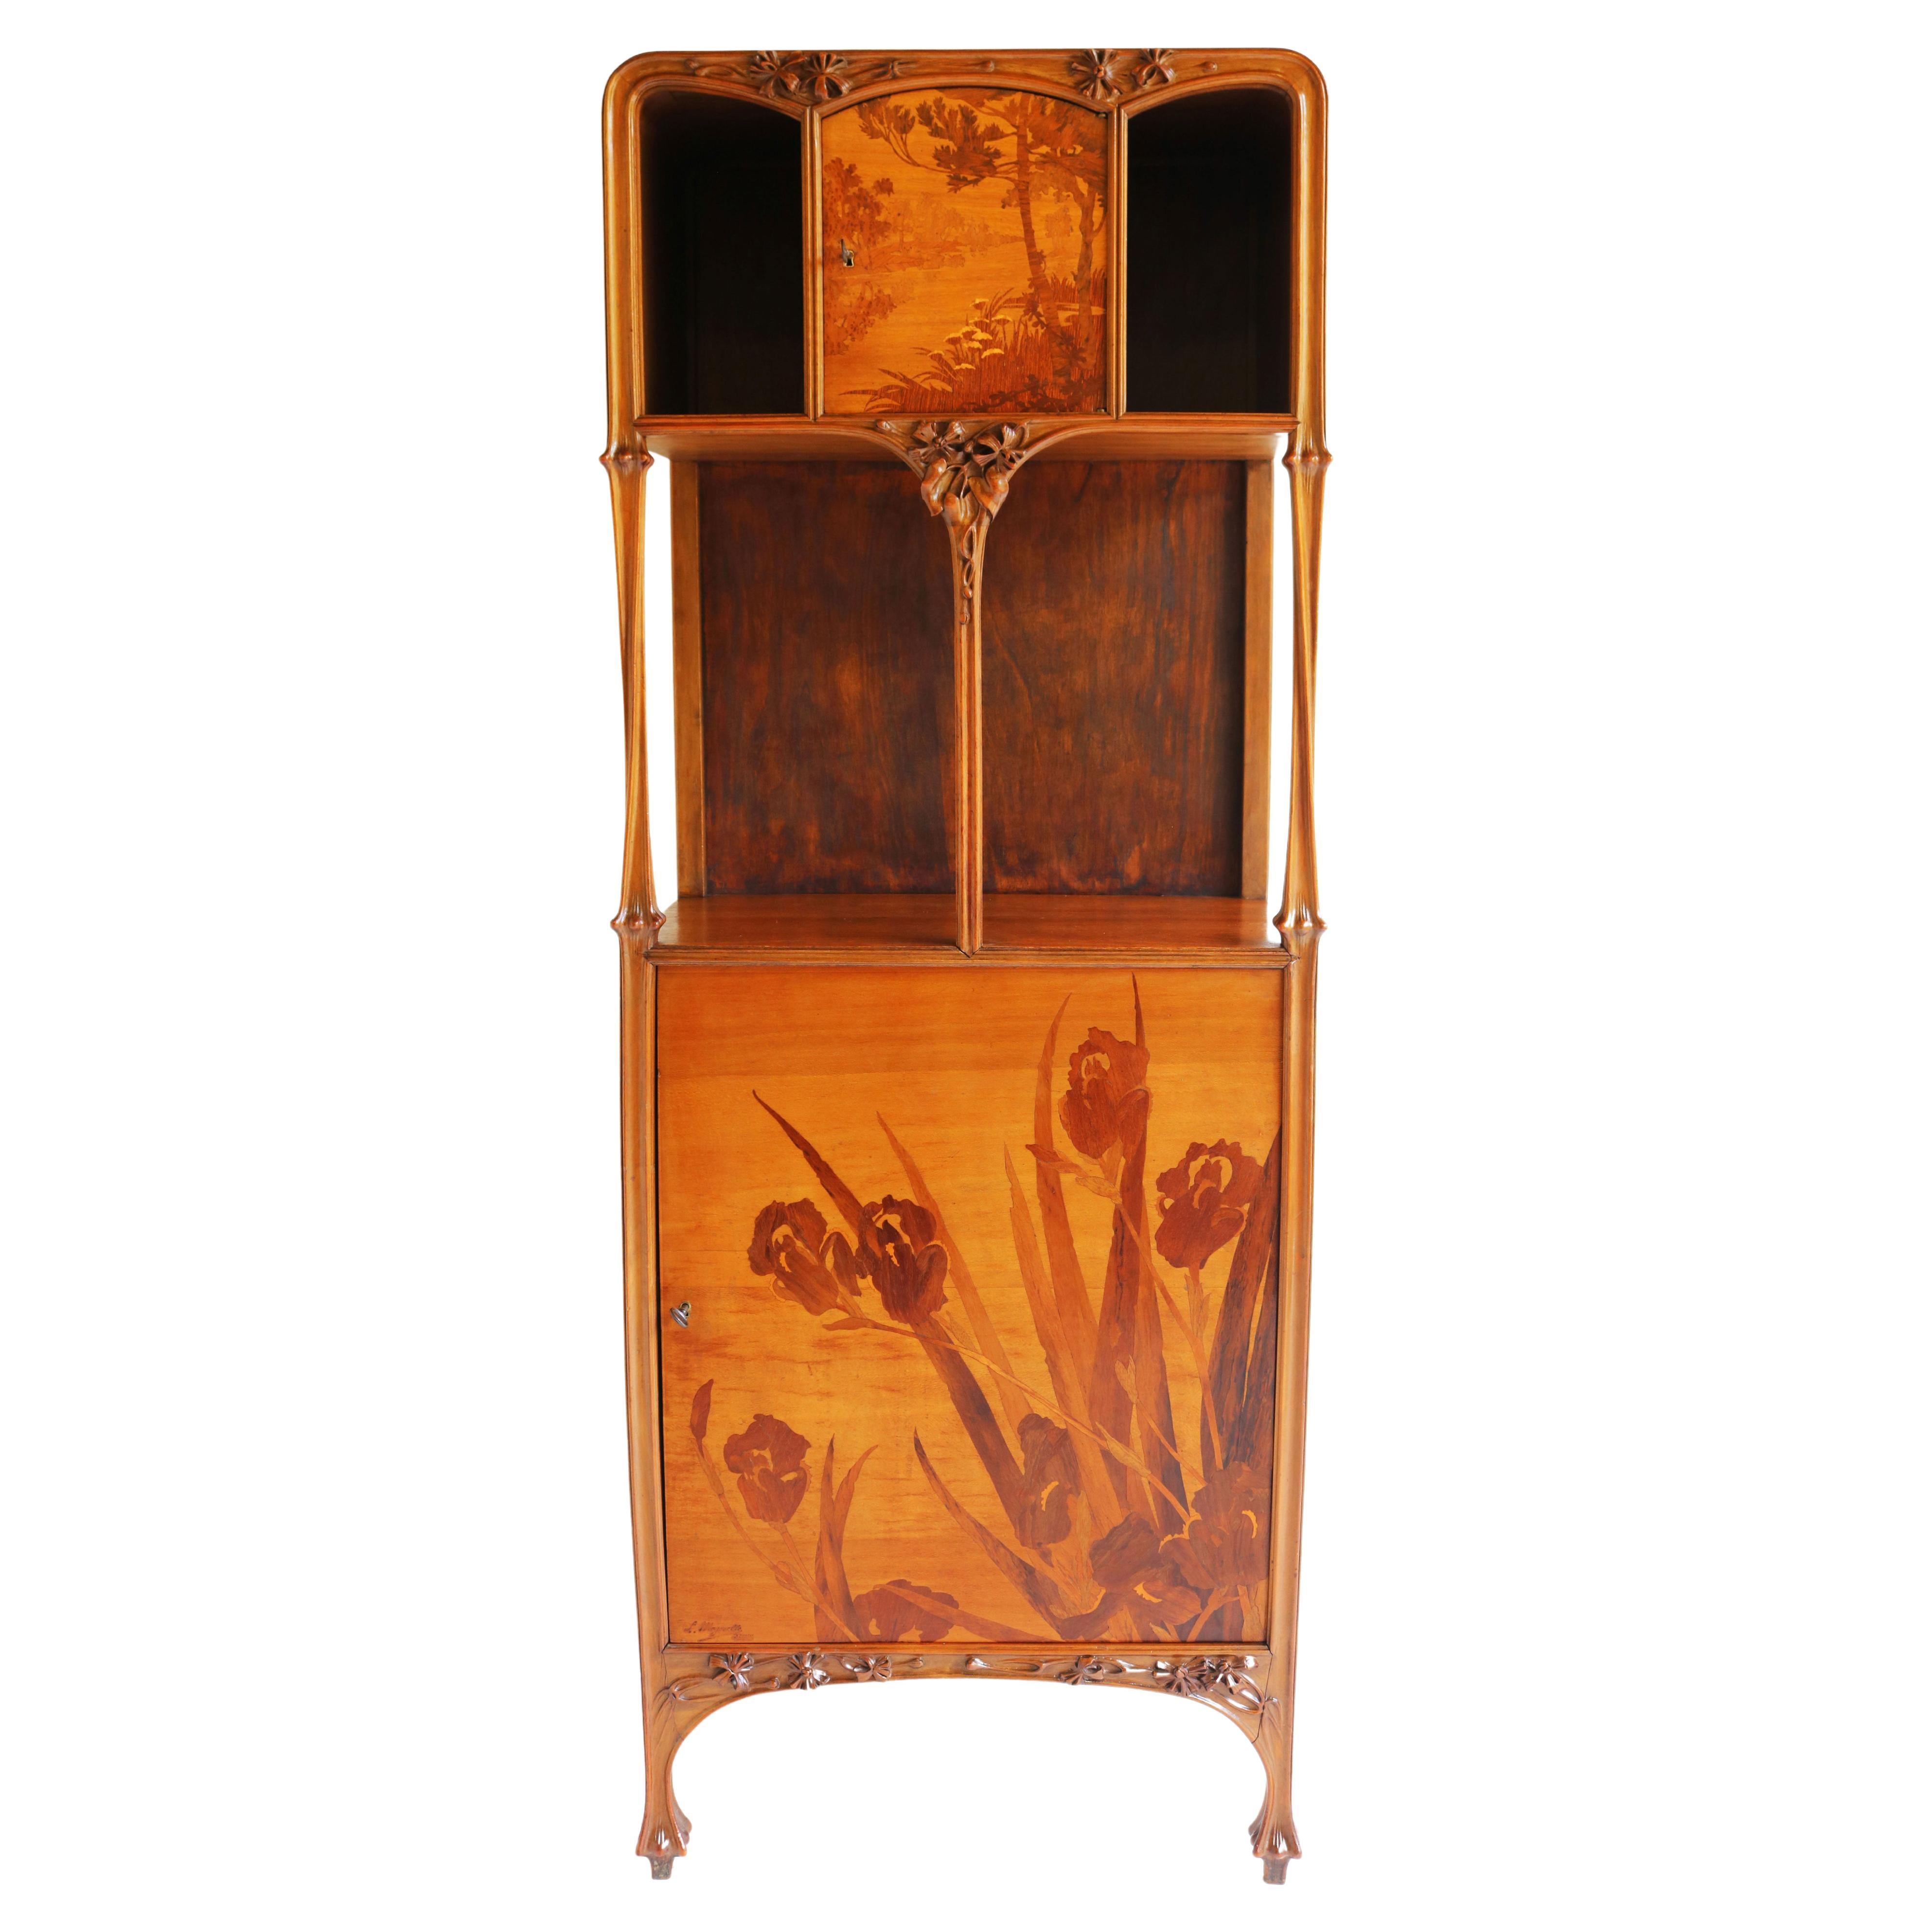 Exceptional Art Nouveau Cabinet by Louis Majorelle 1900 French Antique Nancy For Sale